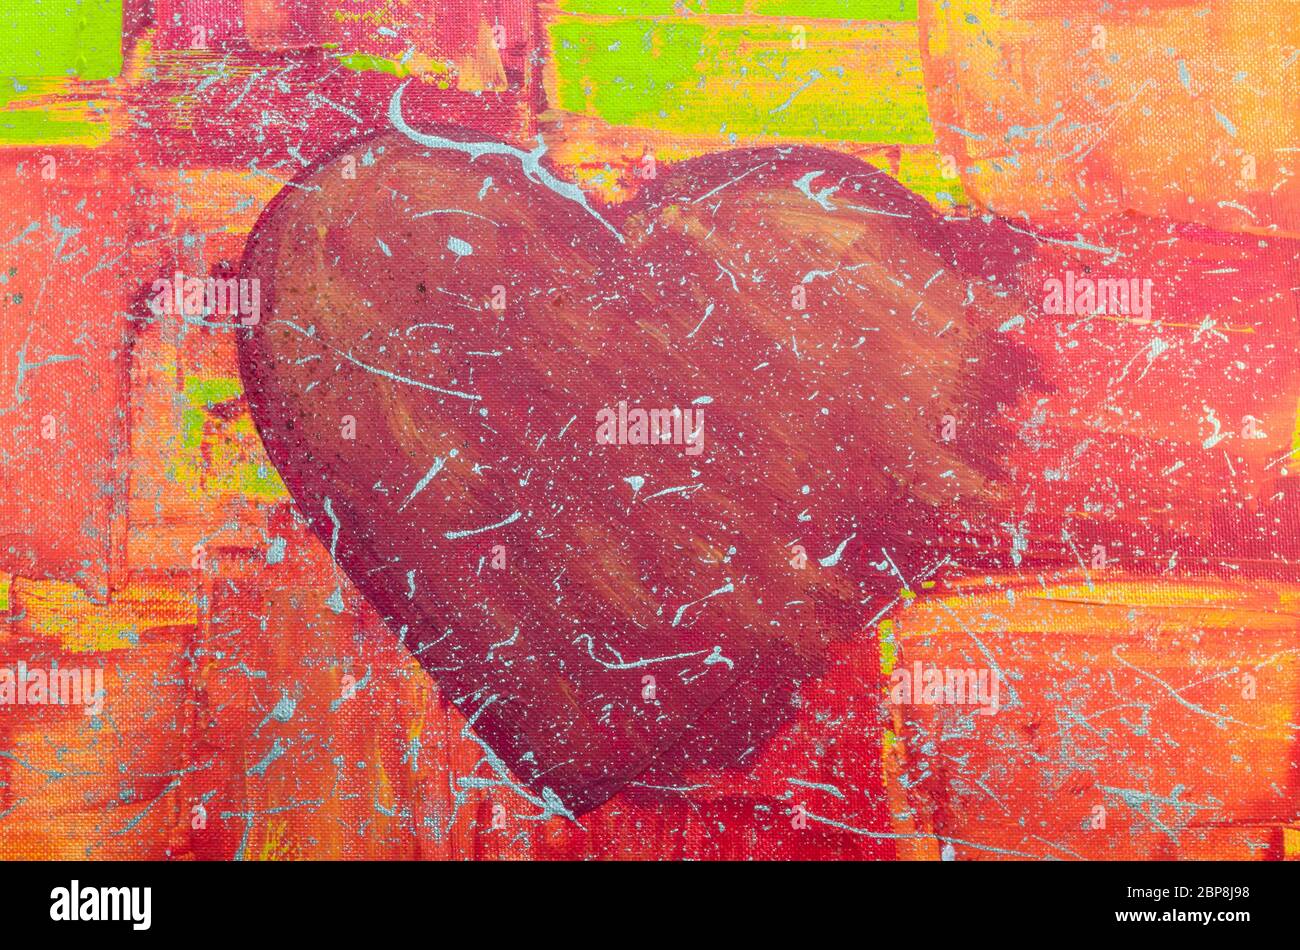 Erbrylmalerei von Unserer Tochter. Hangemaltes großes rote Herz mit Bunten Hintergrund. Foto Stock